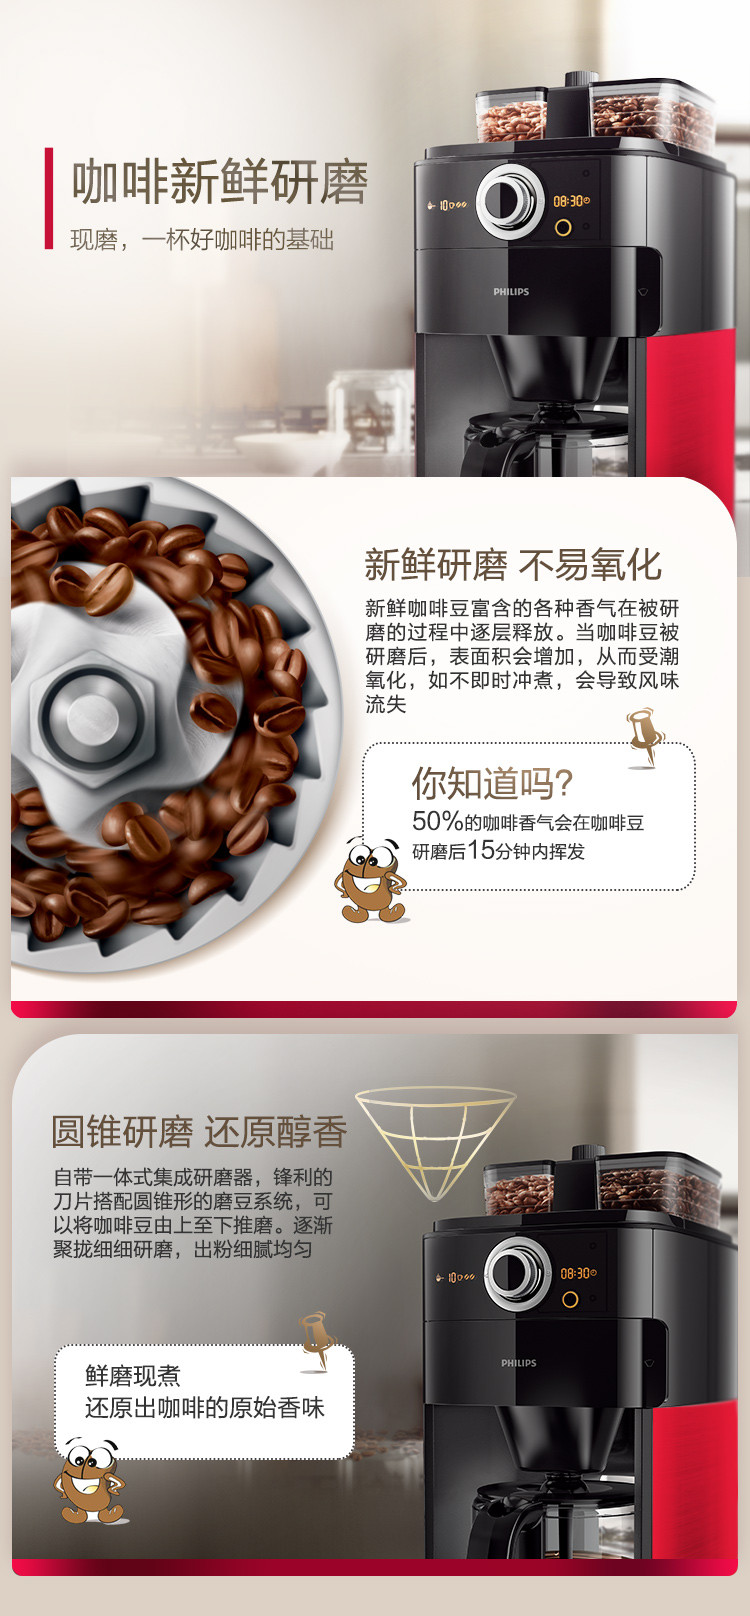 飞利浦/PHILIPS 咖啡机 家用全自动双豆槽自动磨豆功能咖啡壶 可预约定时 HD7762/50